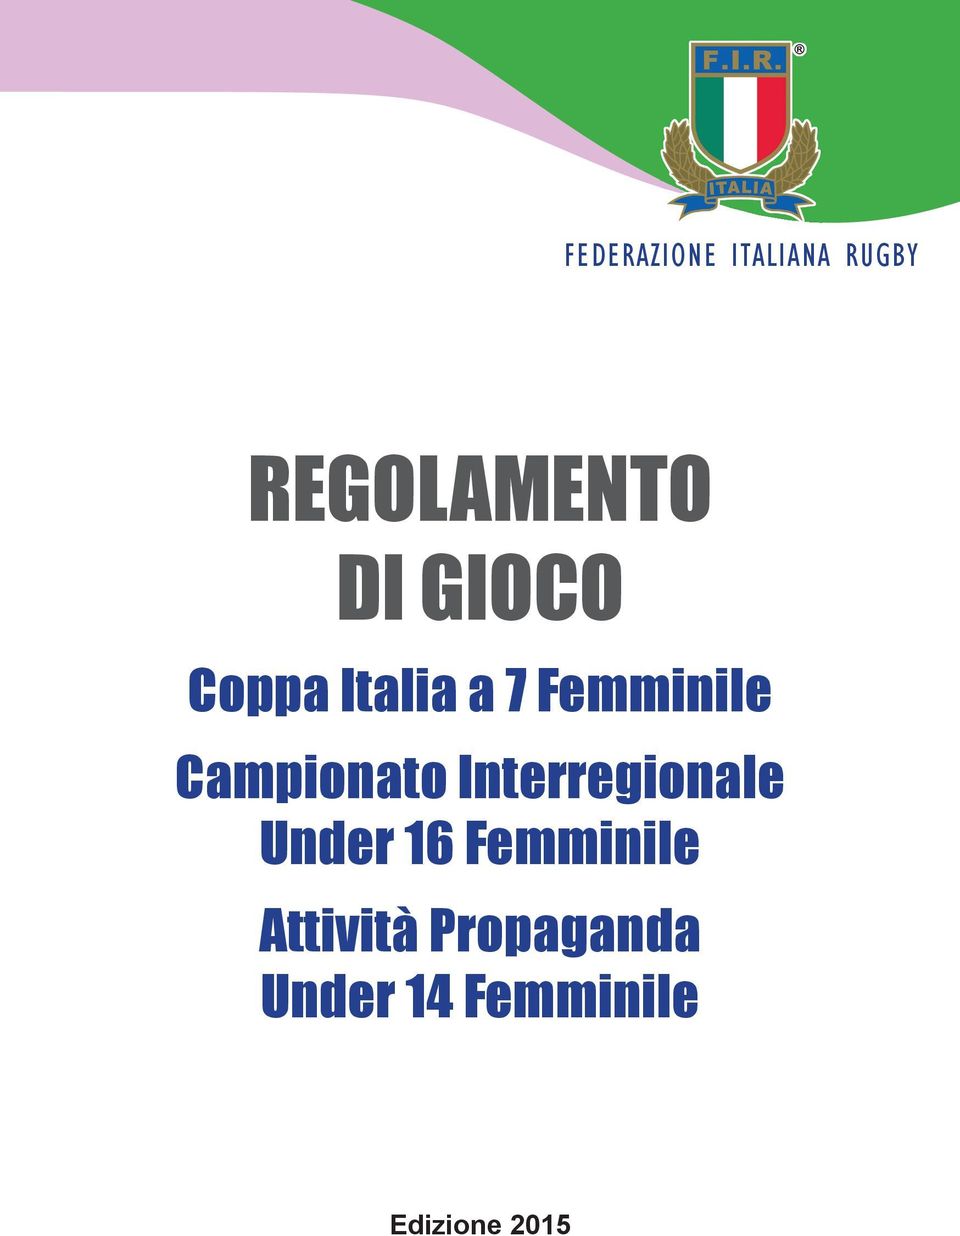 Campionato Interregionale Under 16